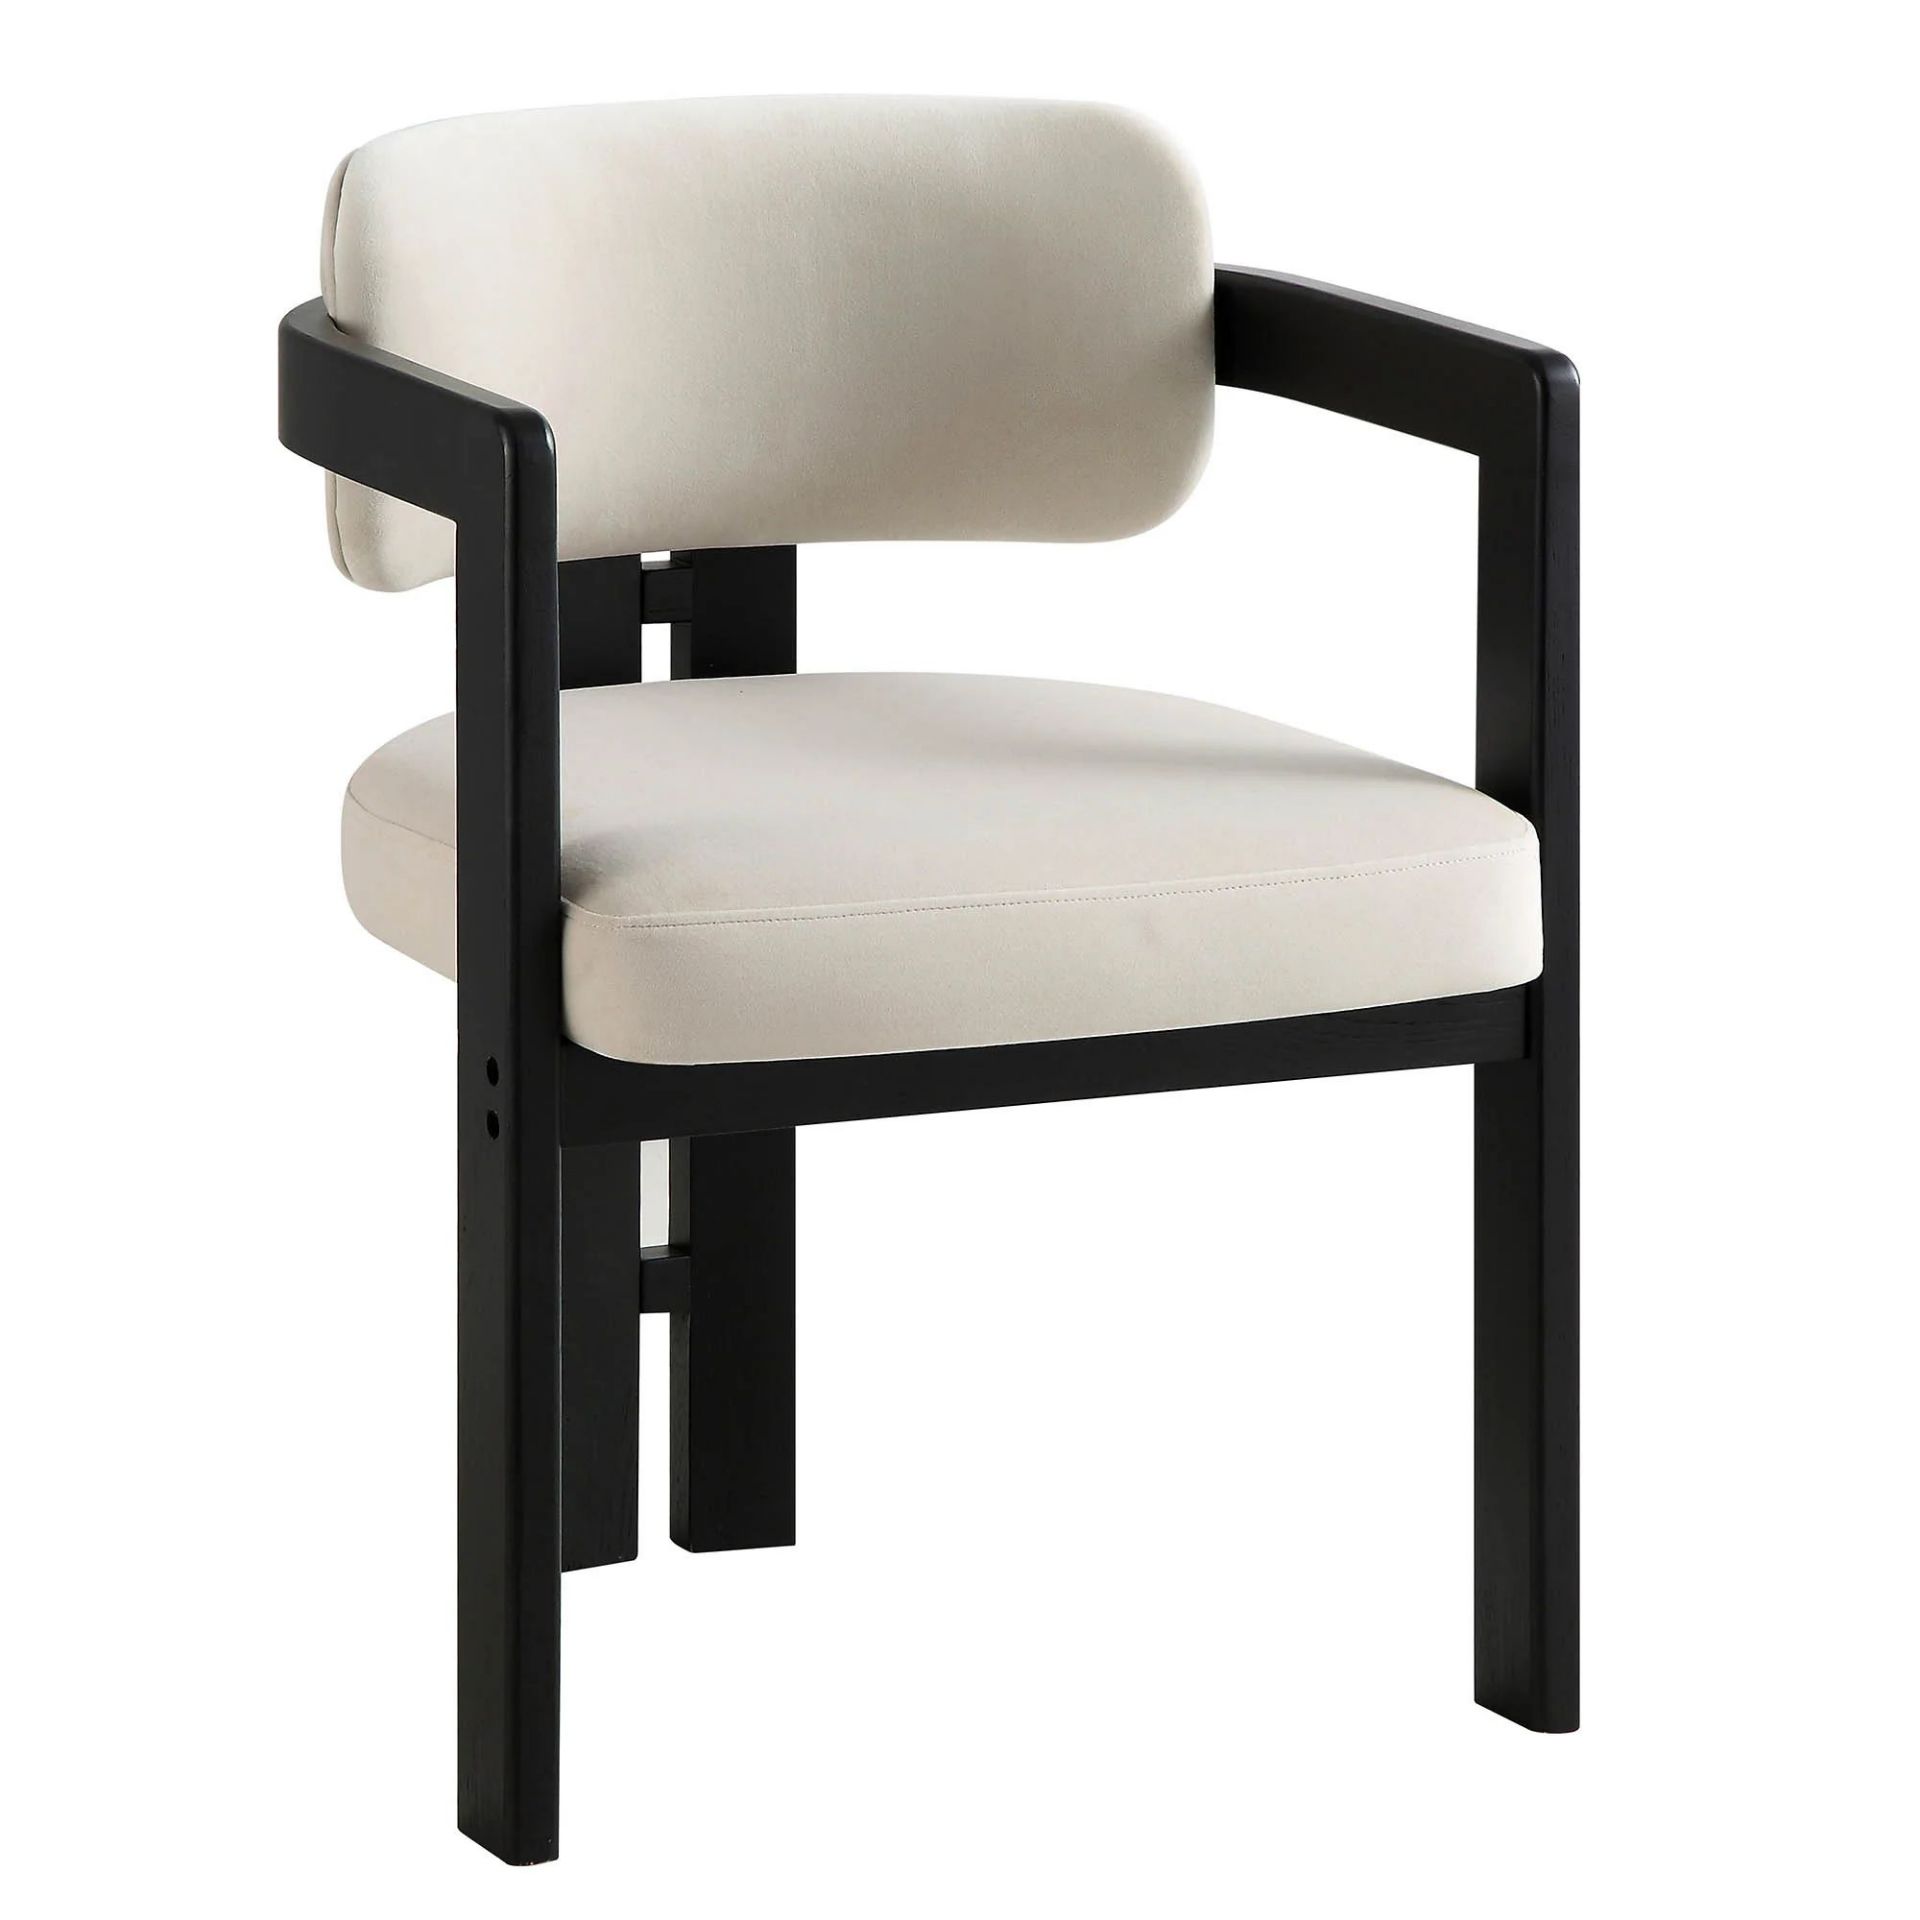 Stanford Curved Oak Frame Upholstered Chair, Champagne Velvet Black Frame. - R14. RRP £219.99. - Bild 2 aus 2